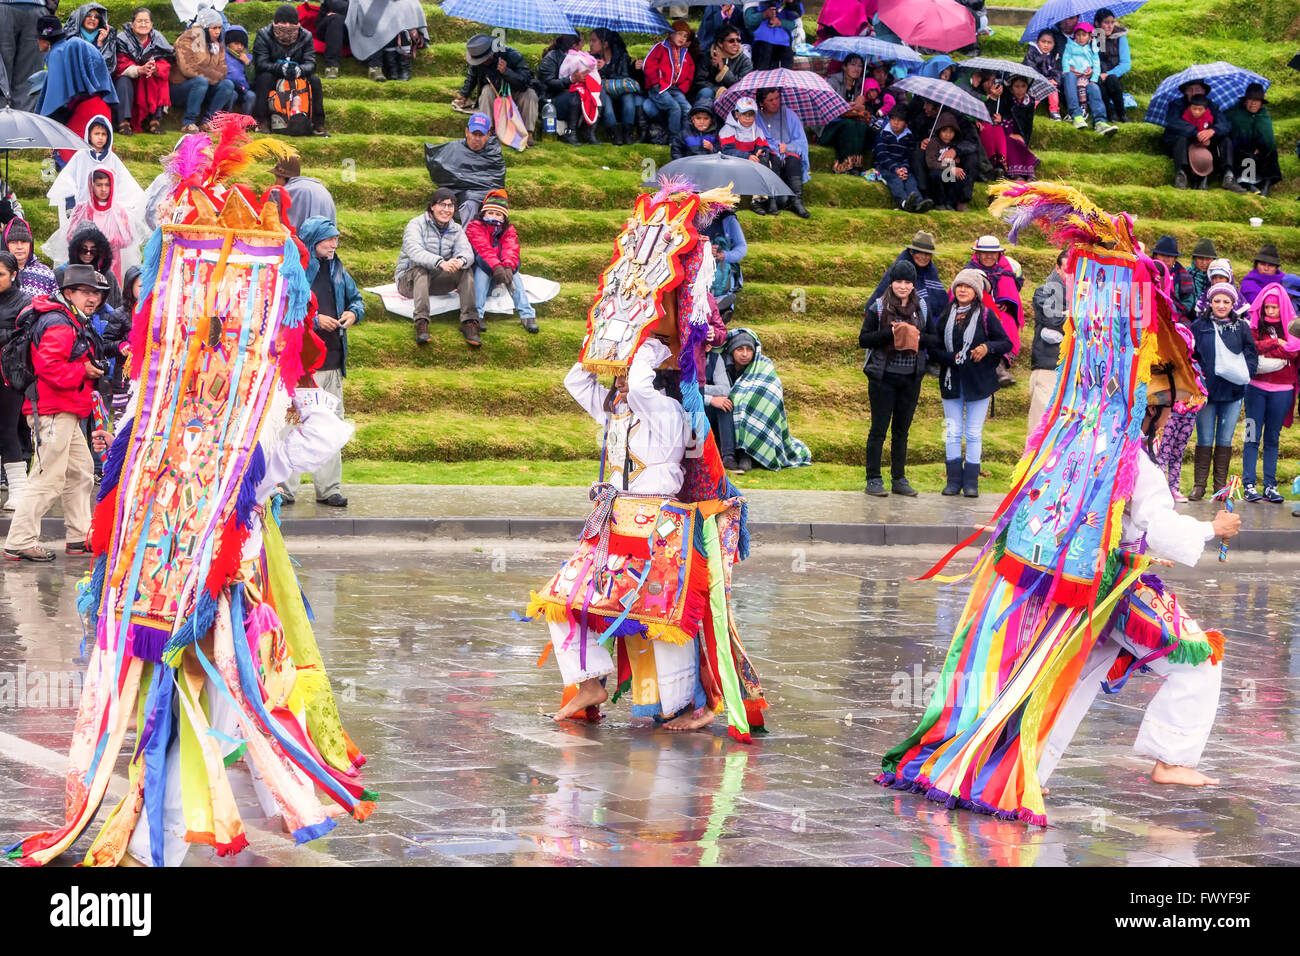 Ingapirca, Equateur - 20 juin 2015 : Les danseurs non identifiés avec les Inti Raymi célébrant Costume Banque D'Images